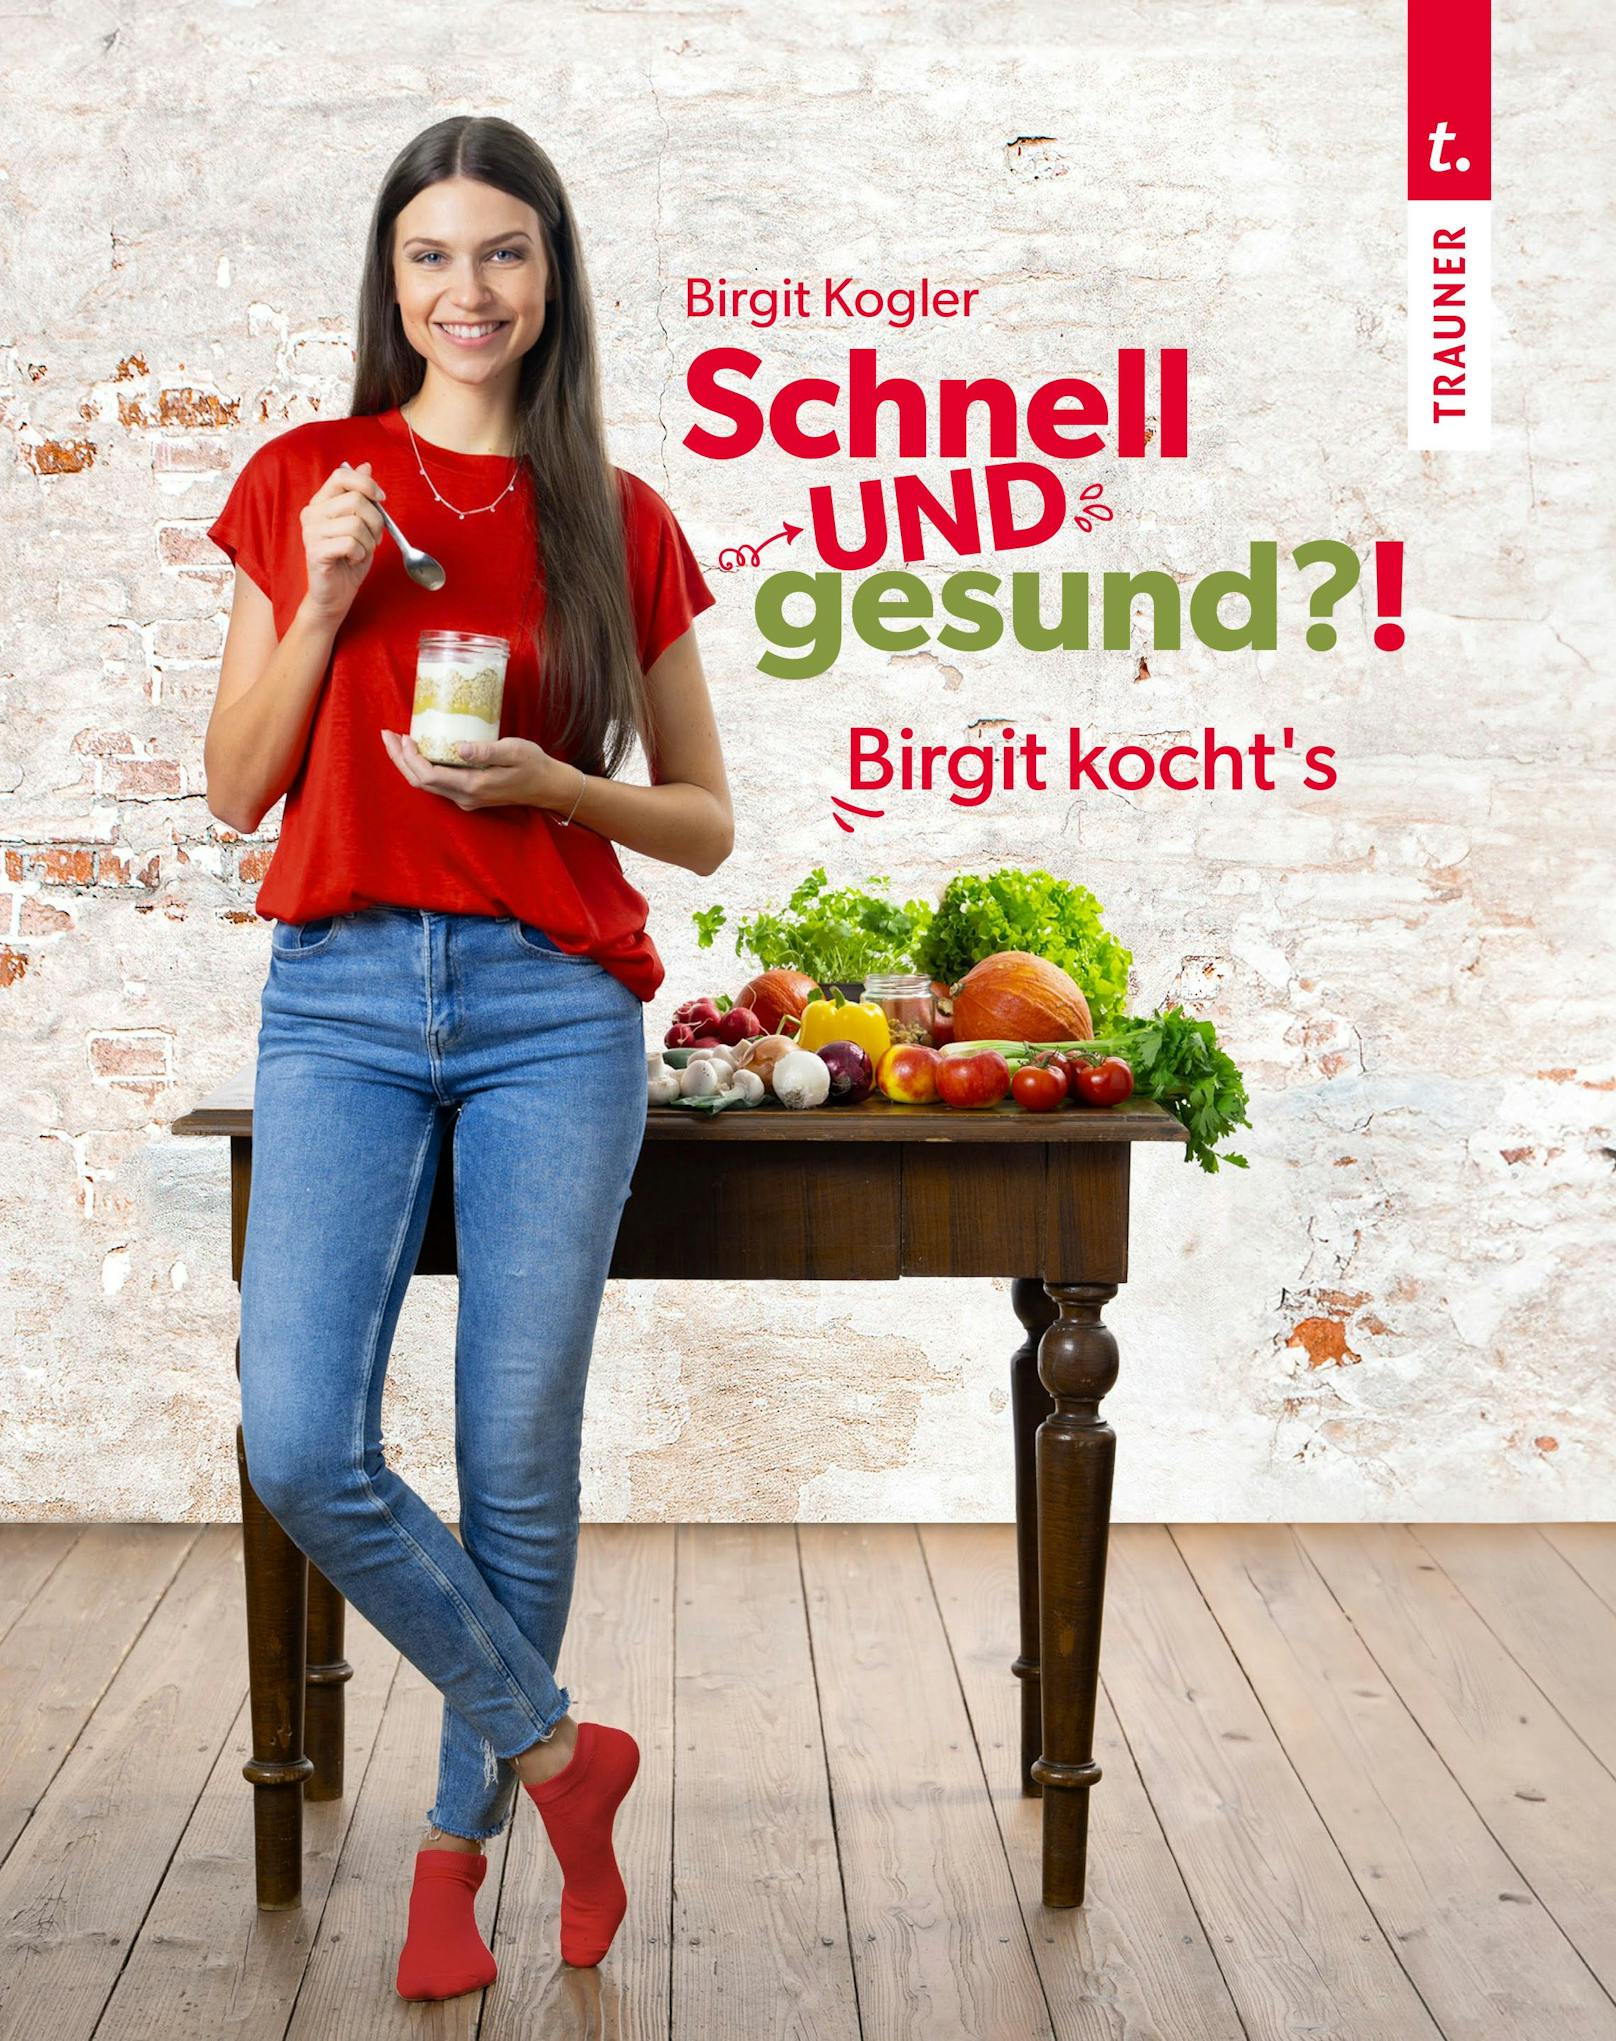 Die bekannte Diätologin Birgit Kogler stellt in dem neuen Buch “Schnell und gesund?! Birgit kocht’s” – erschienen im Trauner Verlag - Rezepte vor, die schnell funktionieren UND gesund sind.